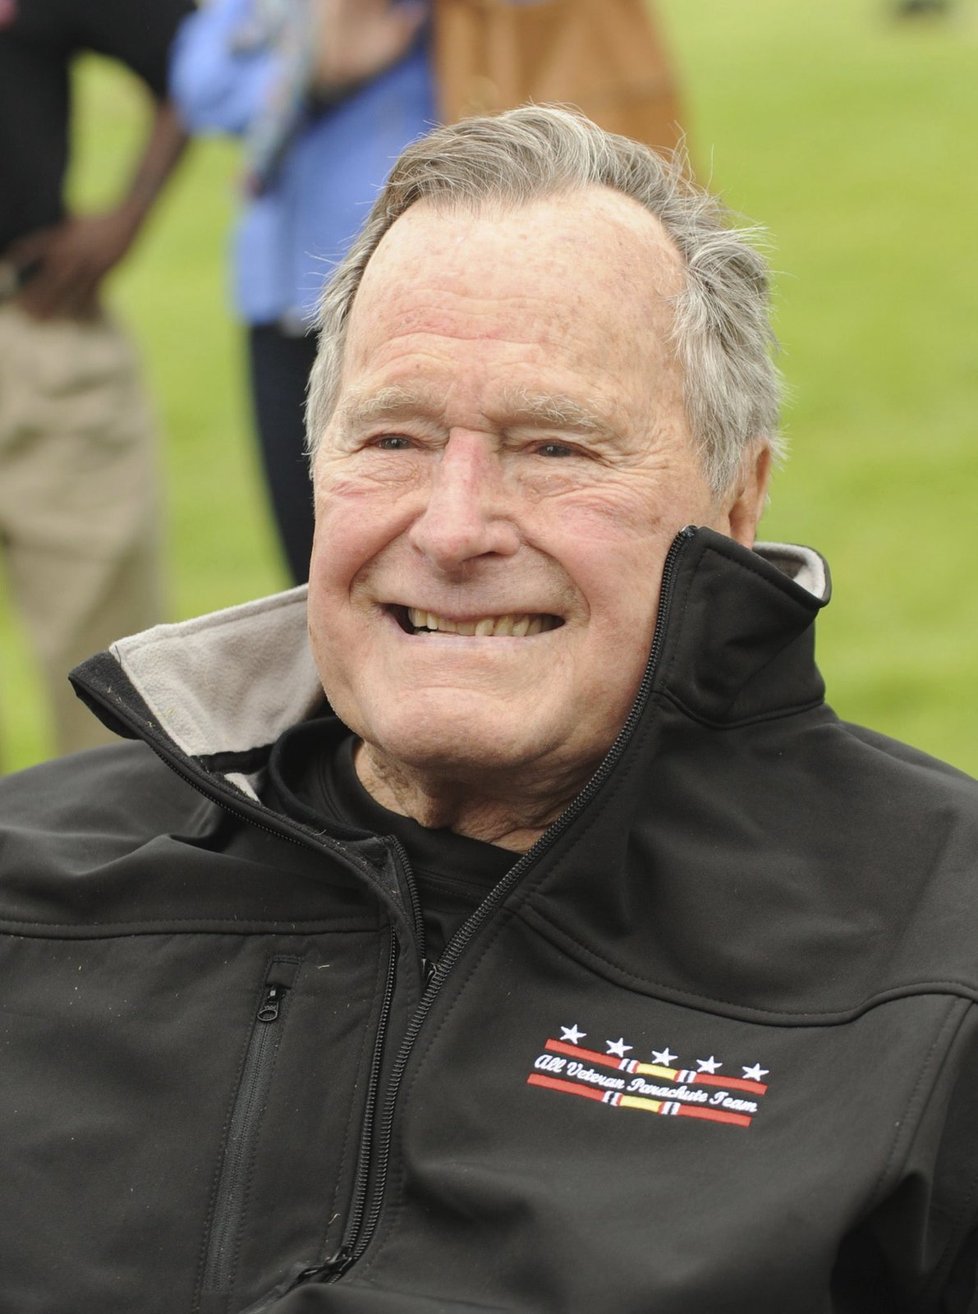 George Bush st. byl 41. prezidentem USA - v letech 1989 až 1993